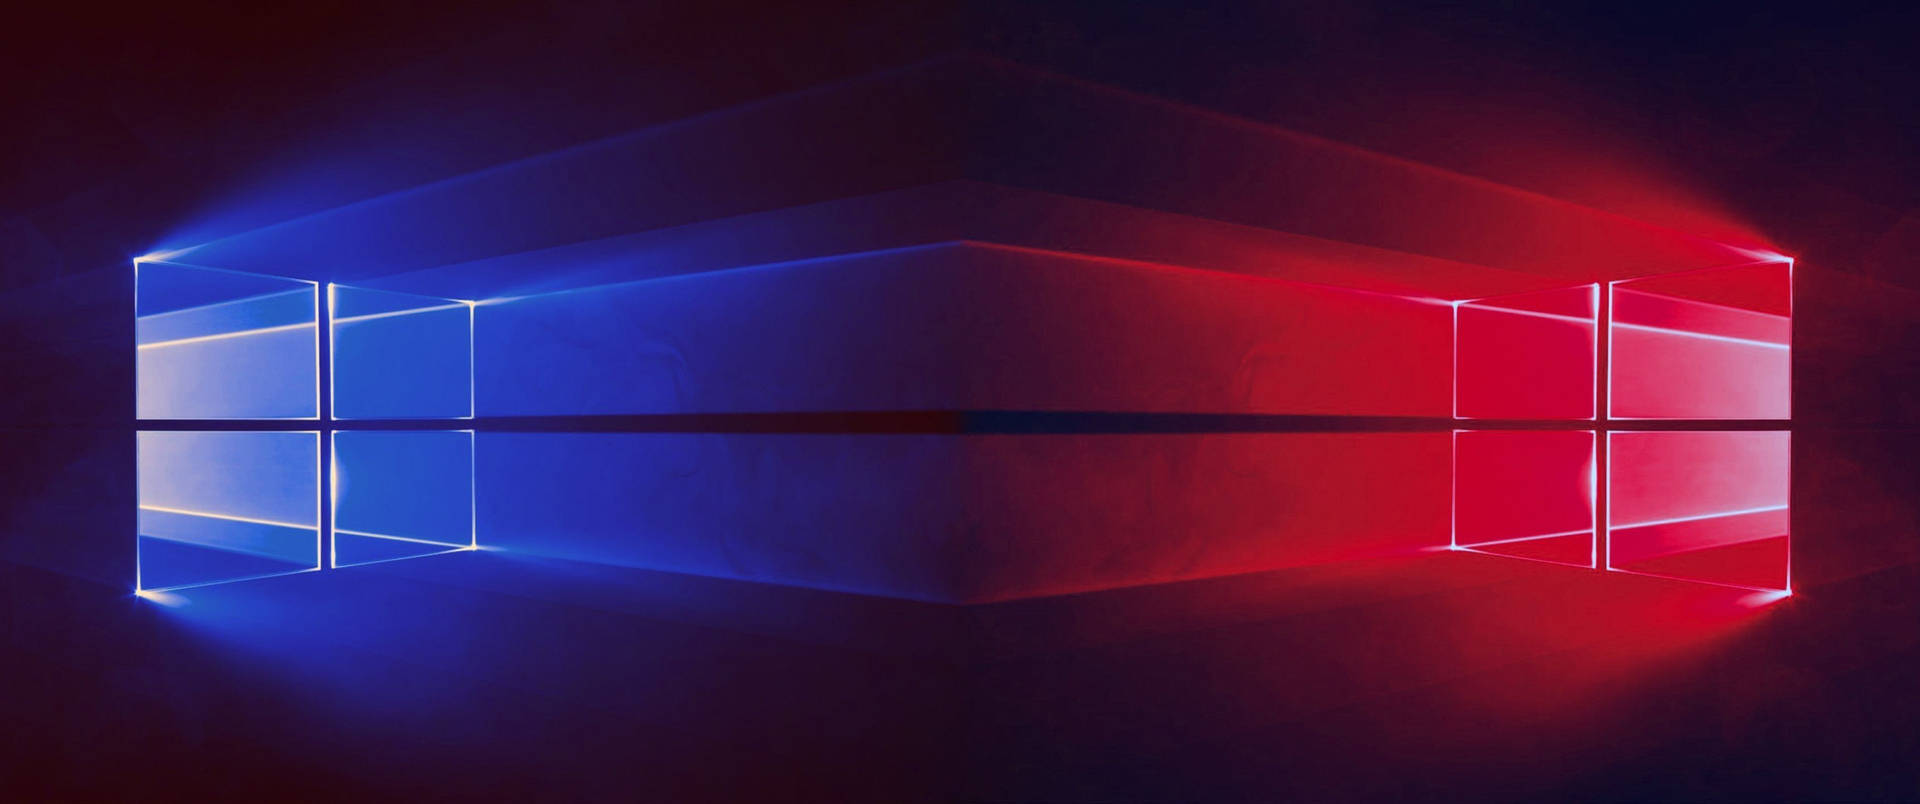 Windows 10 Symmetrical Logo Wallpaper